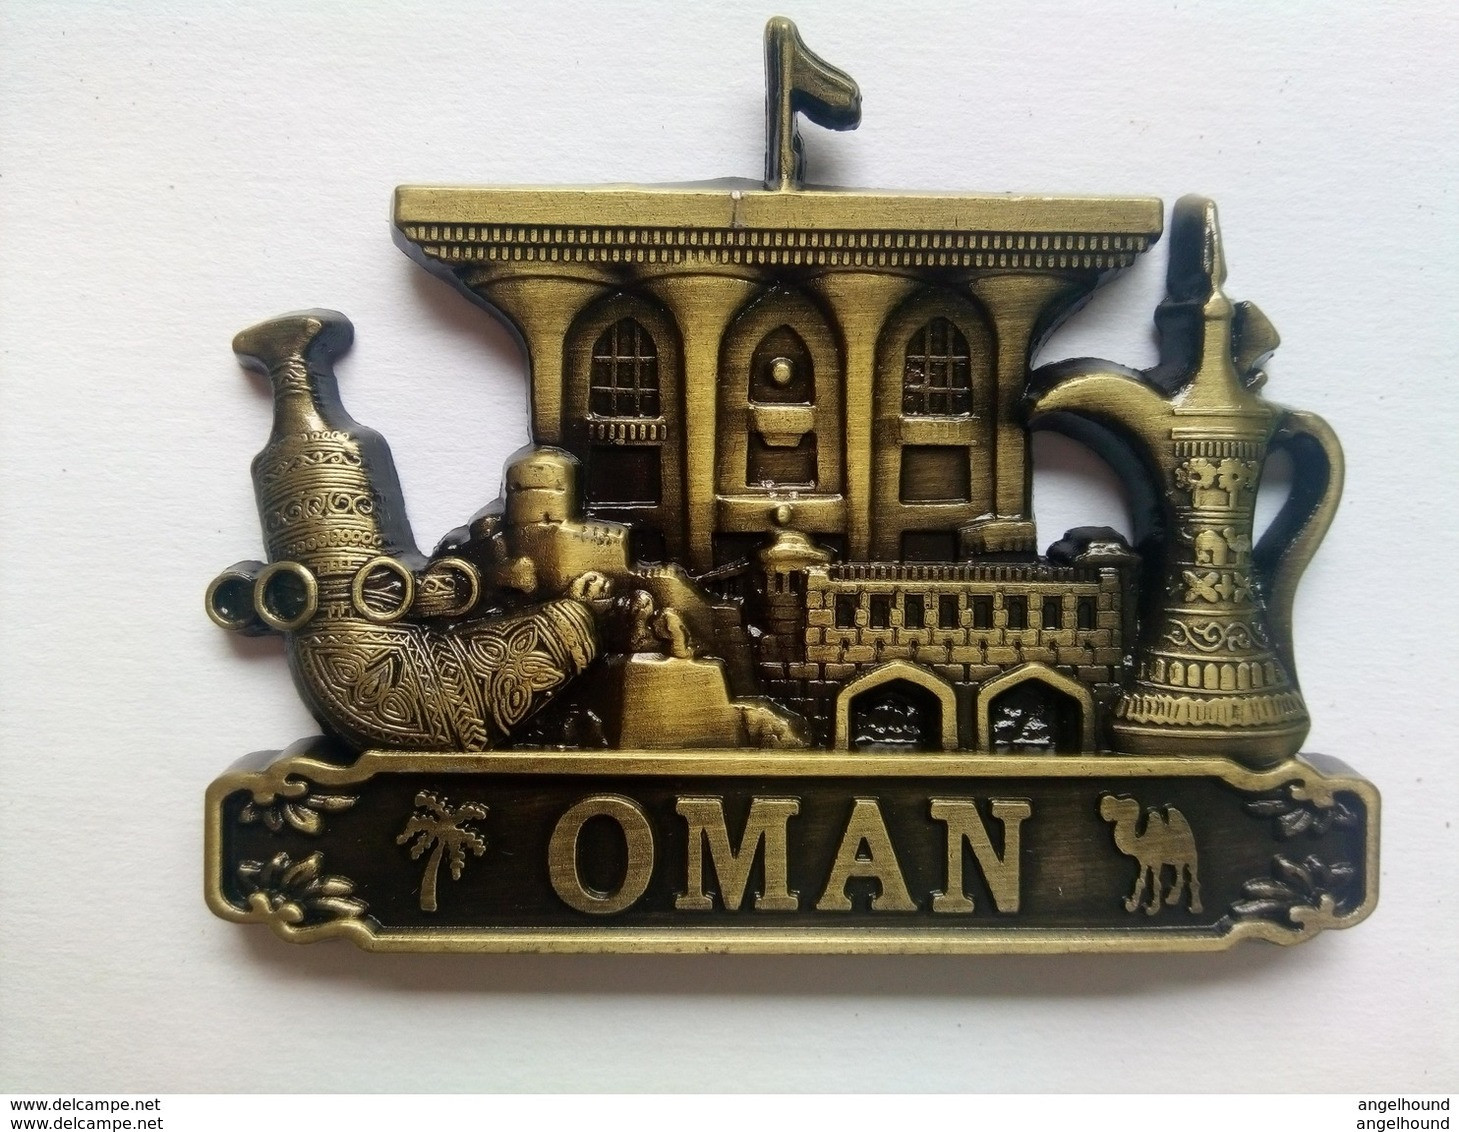 Oman - Tourismus